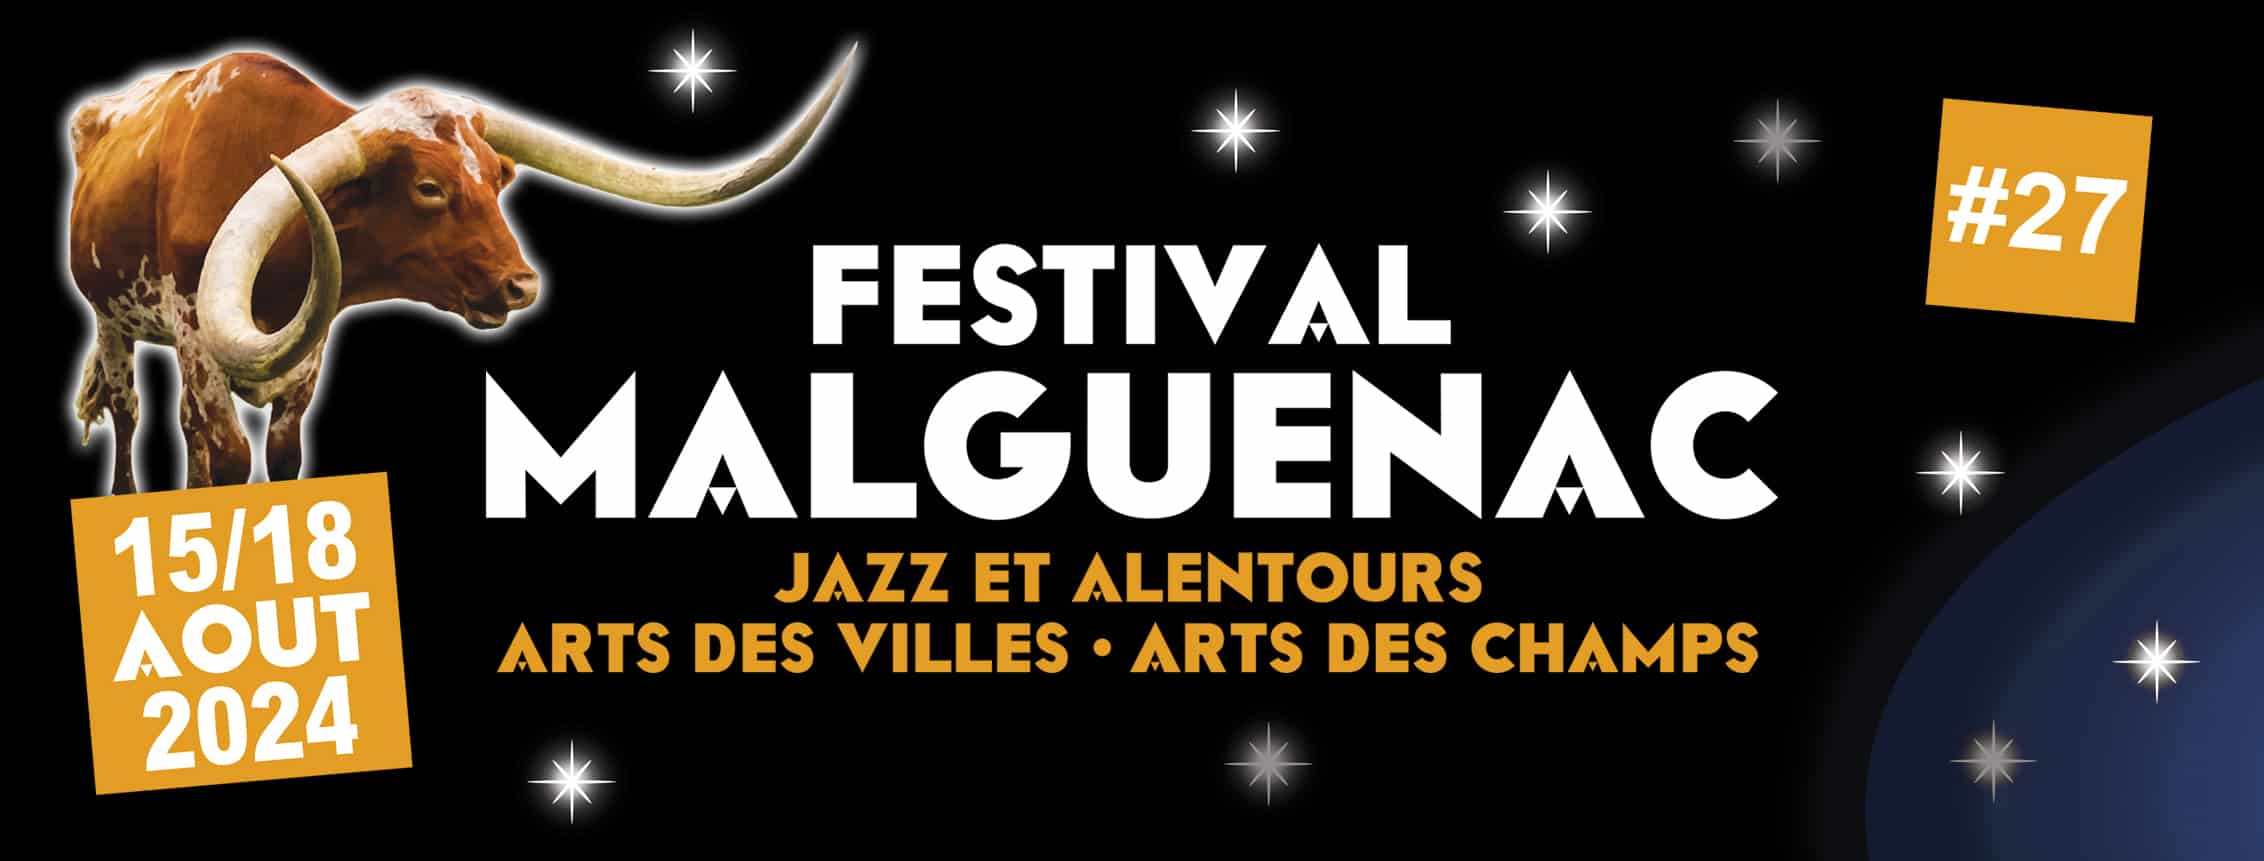 Festival de Malguénac, Arts des villes, arts des champs du 15 au 18 août 2024